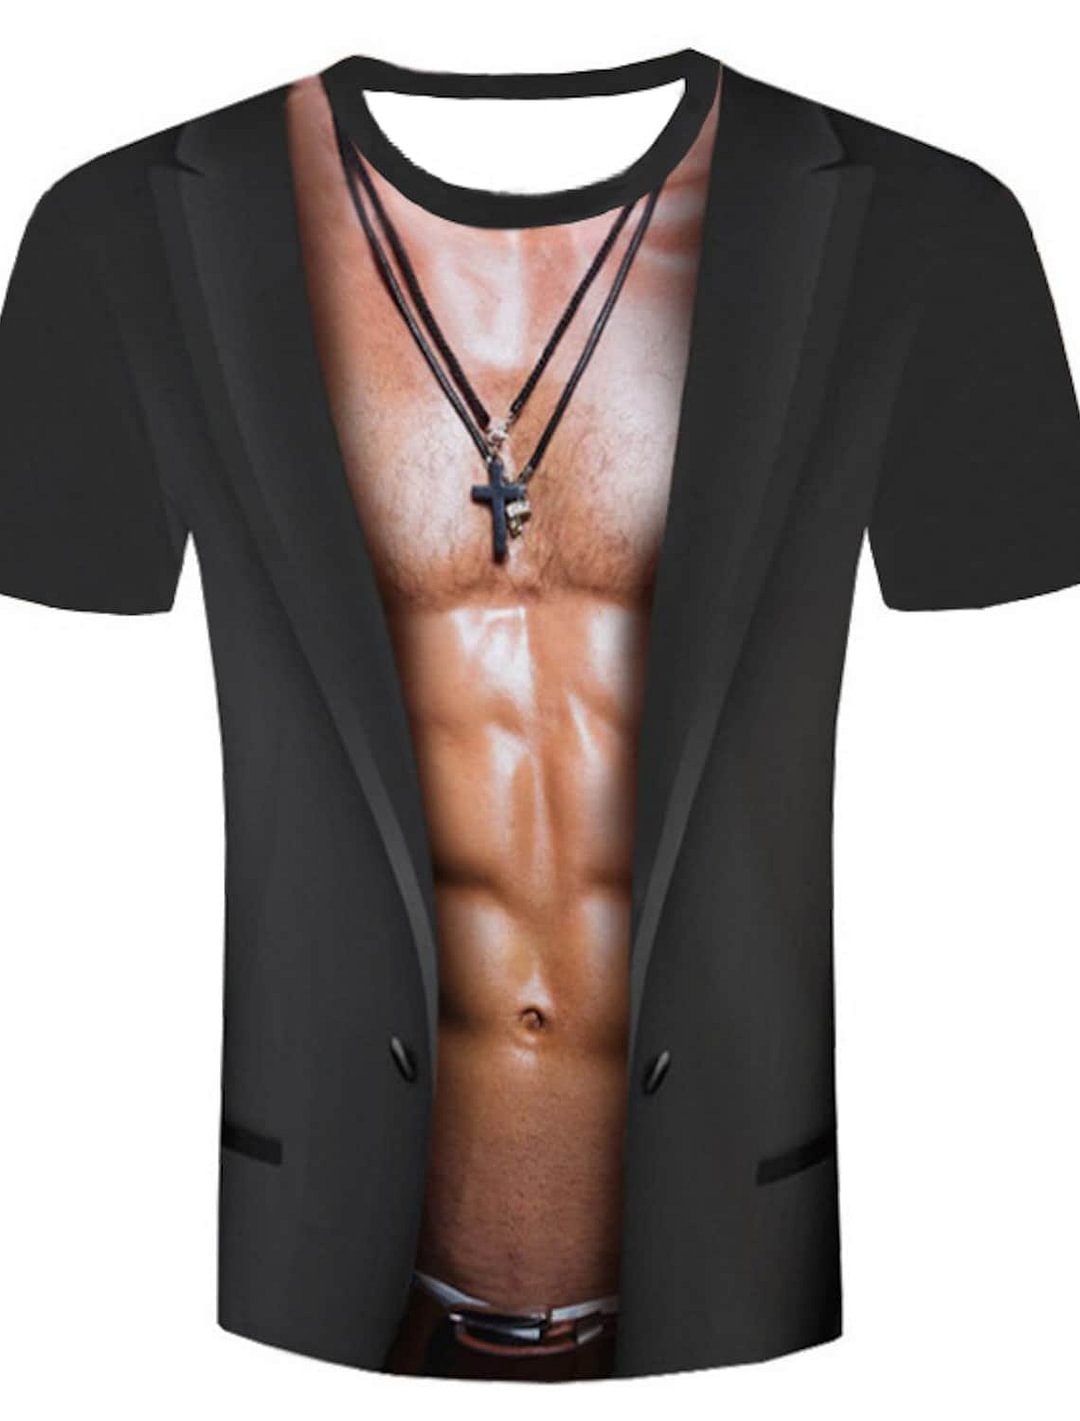 Men's T shirt Shirt Graphic Simulation Plus Size Print Tops Round Neck-Corachic